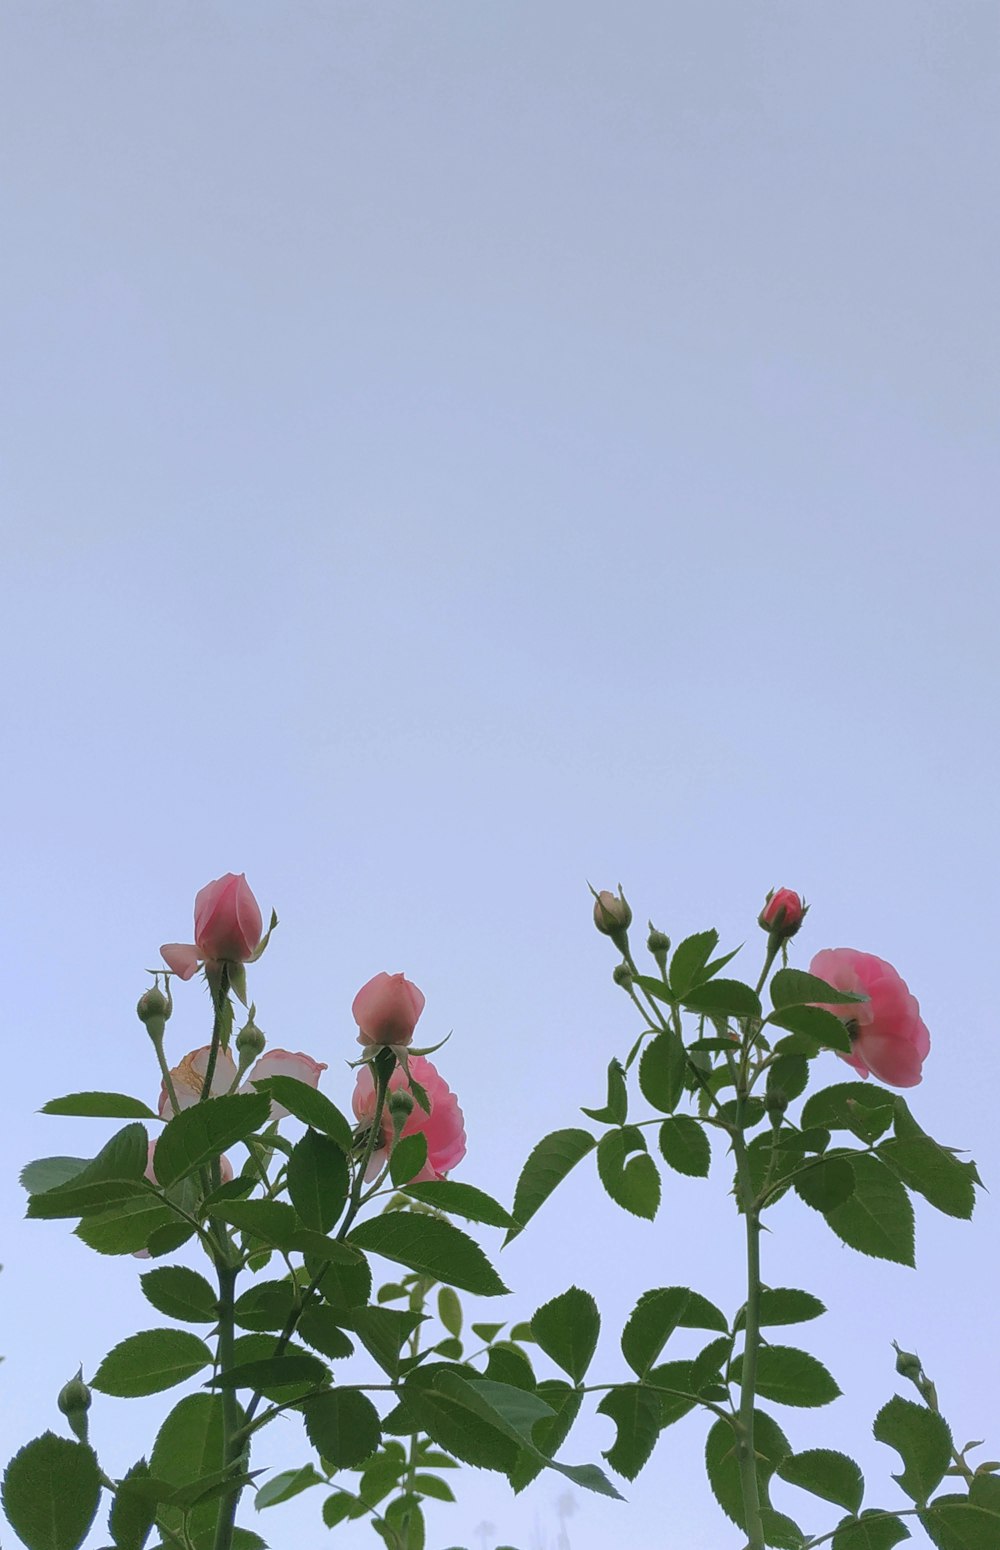 rosas rojas con hojas verdes bajo el cielo azul